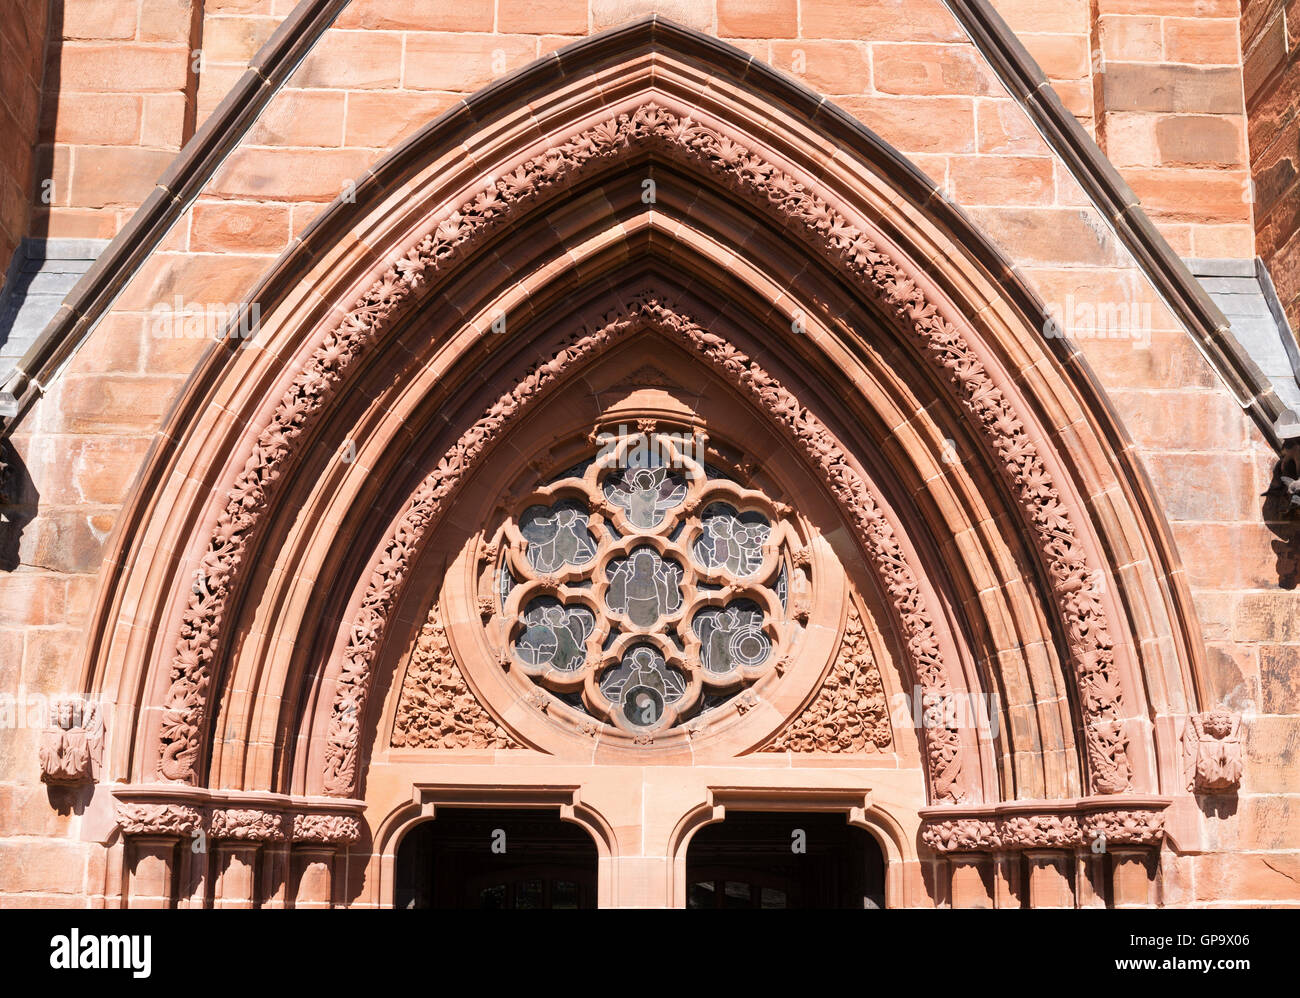 Vue détaillée de la fenêtre et la voûte au-dessus de l'entrée de la cathédrale de Carlisle, Cumbria, England, UK Banque D'Images